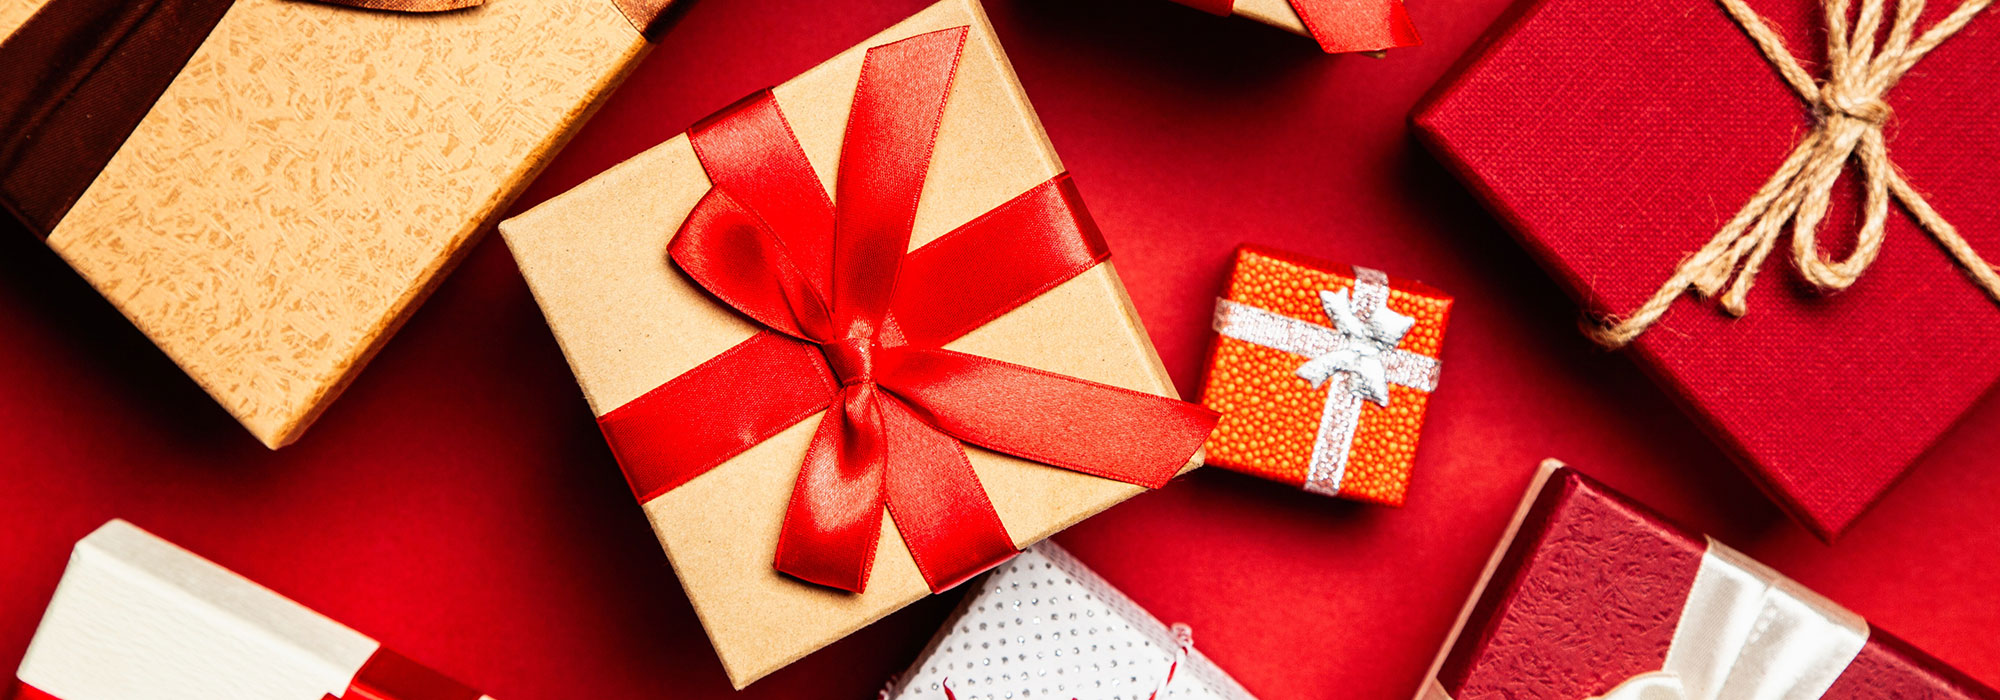 5 Gründe, Weihnachten mit veredelten Artikeln zu feiern